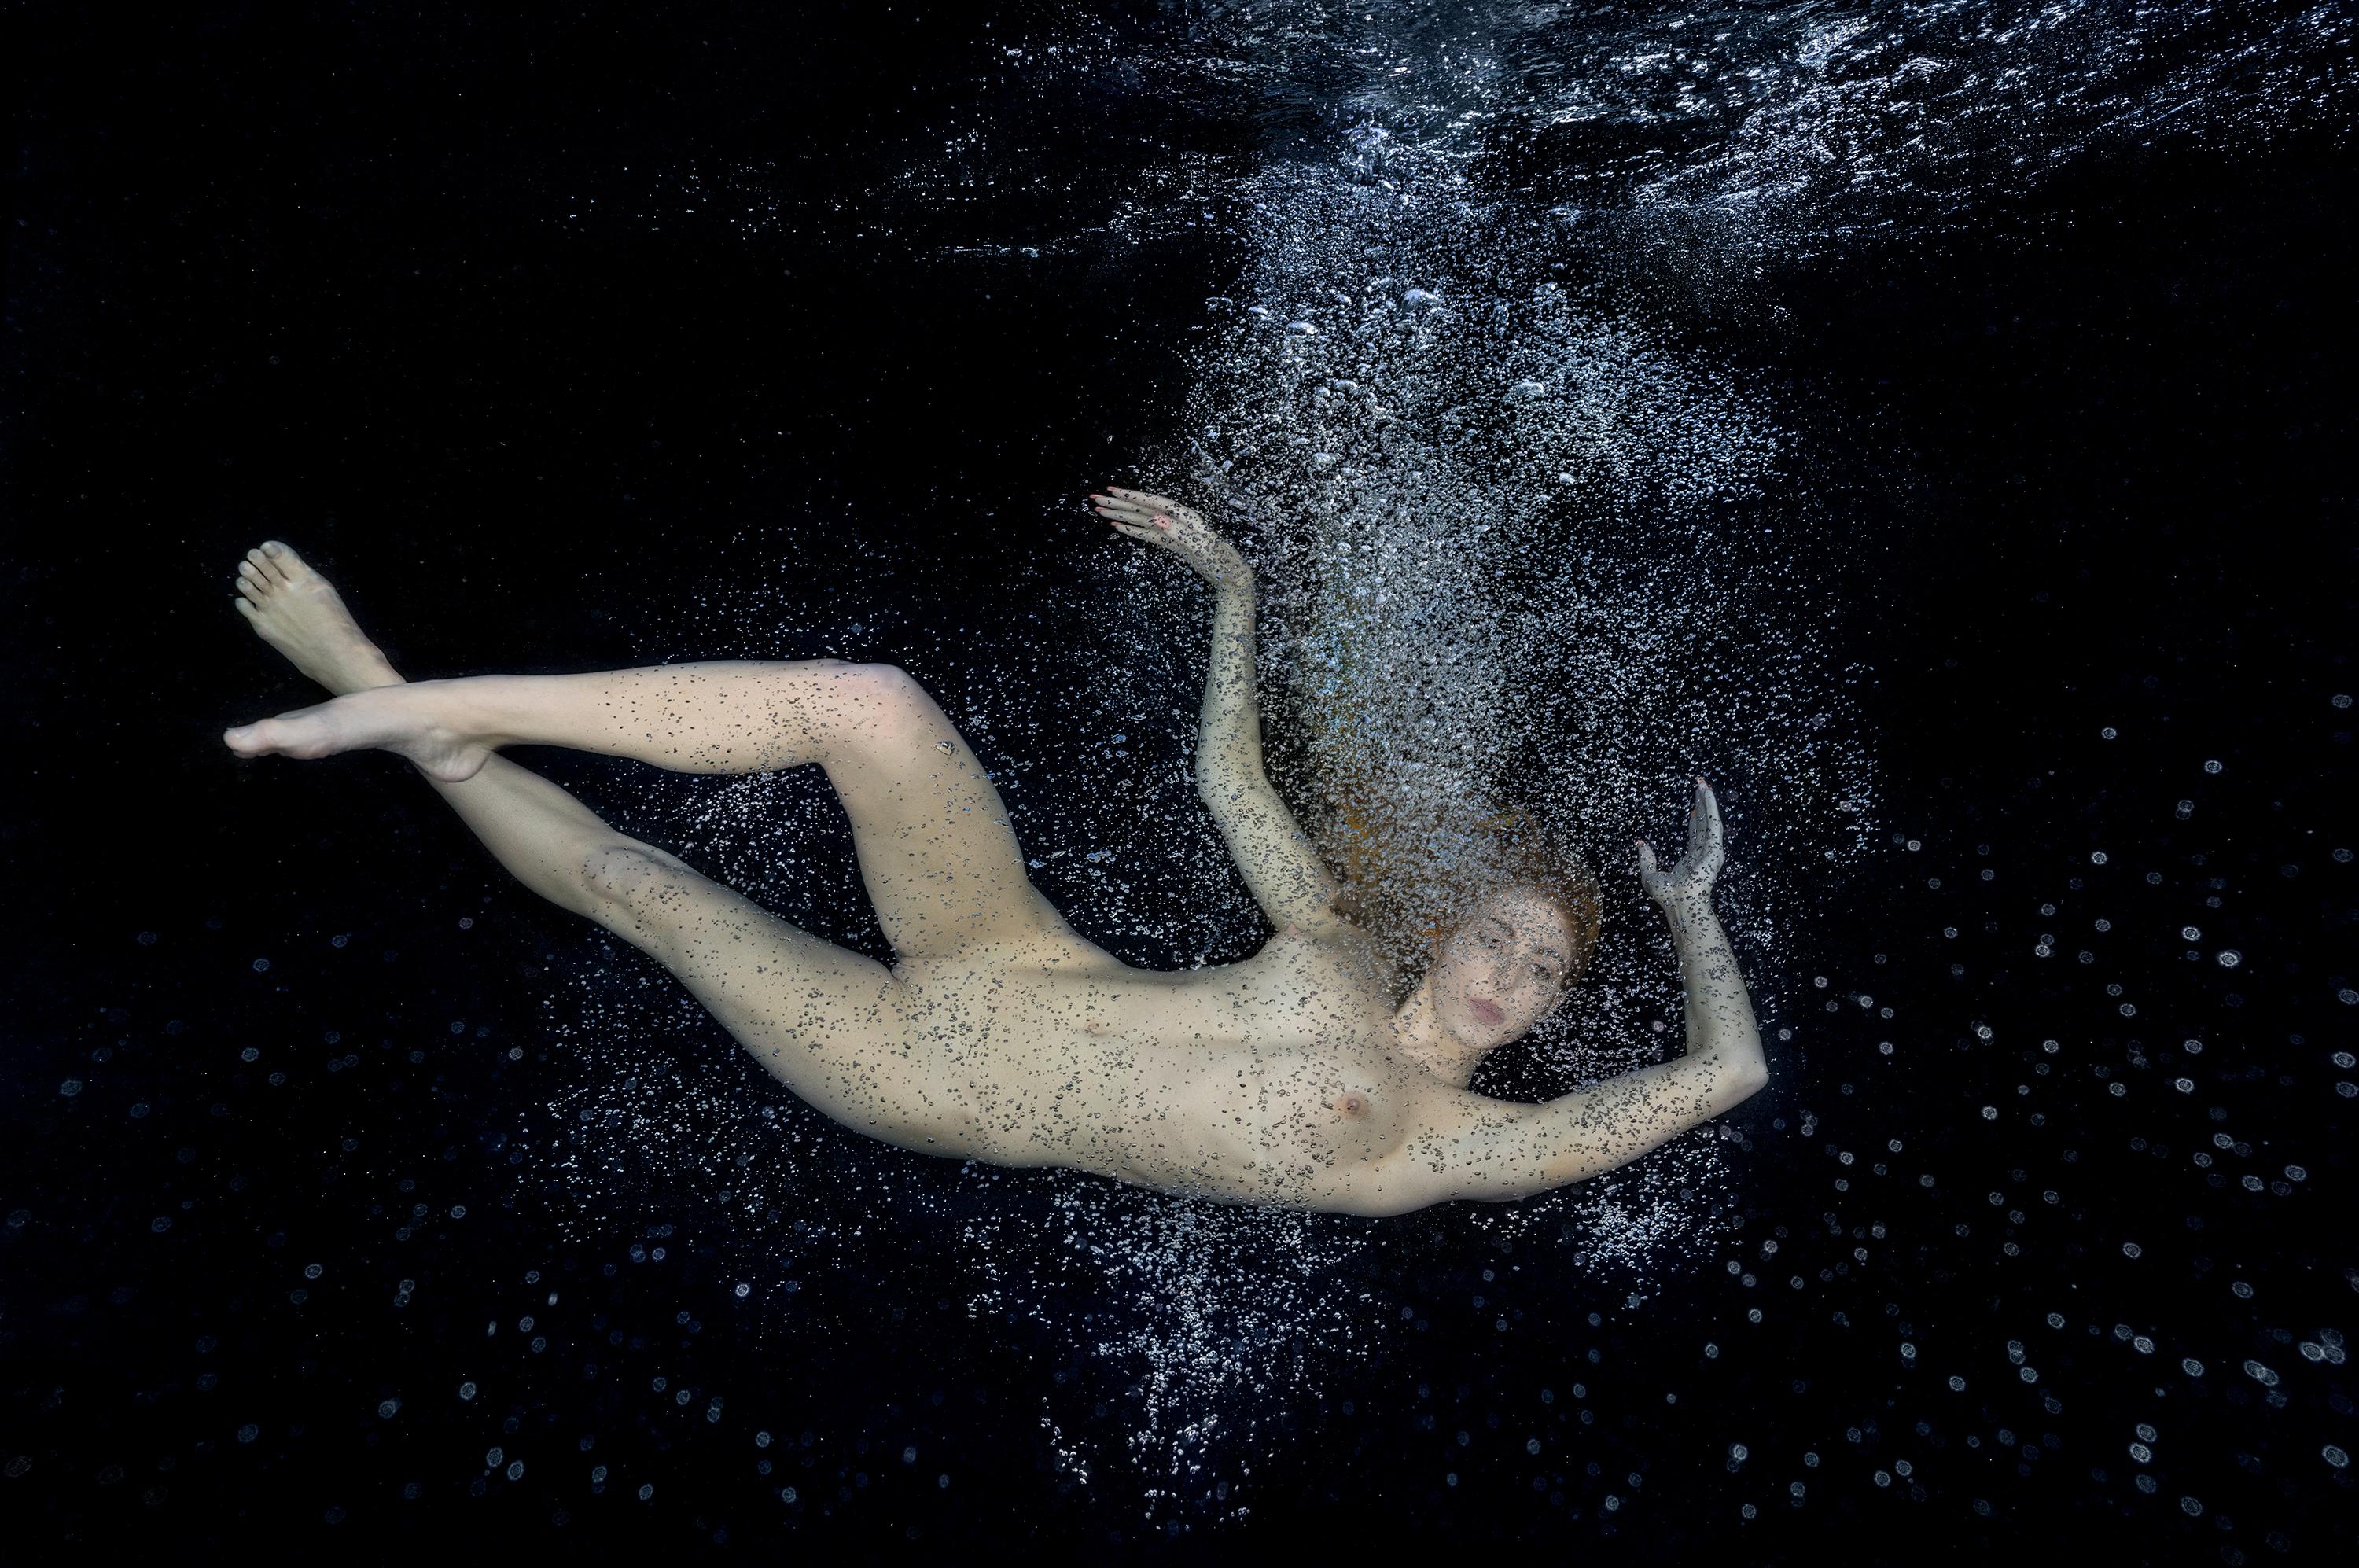 Alex Sher Figurative Photograph - Silver Rain - underwater nude photograph - archival pigment 17" x 24"